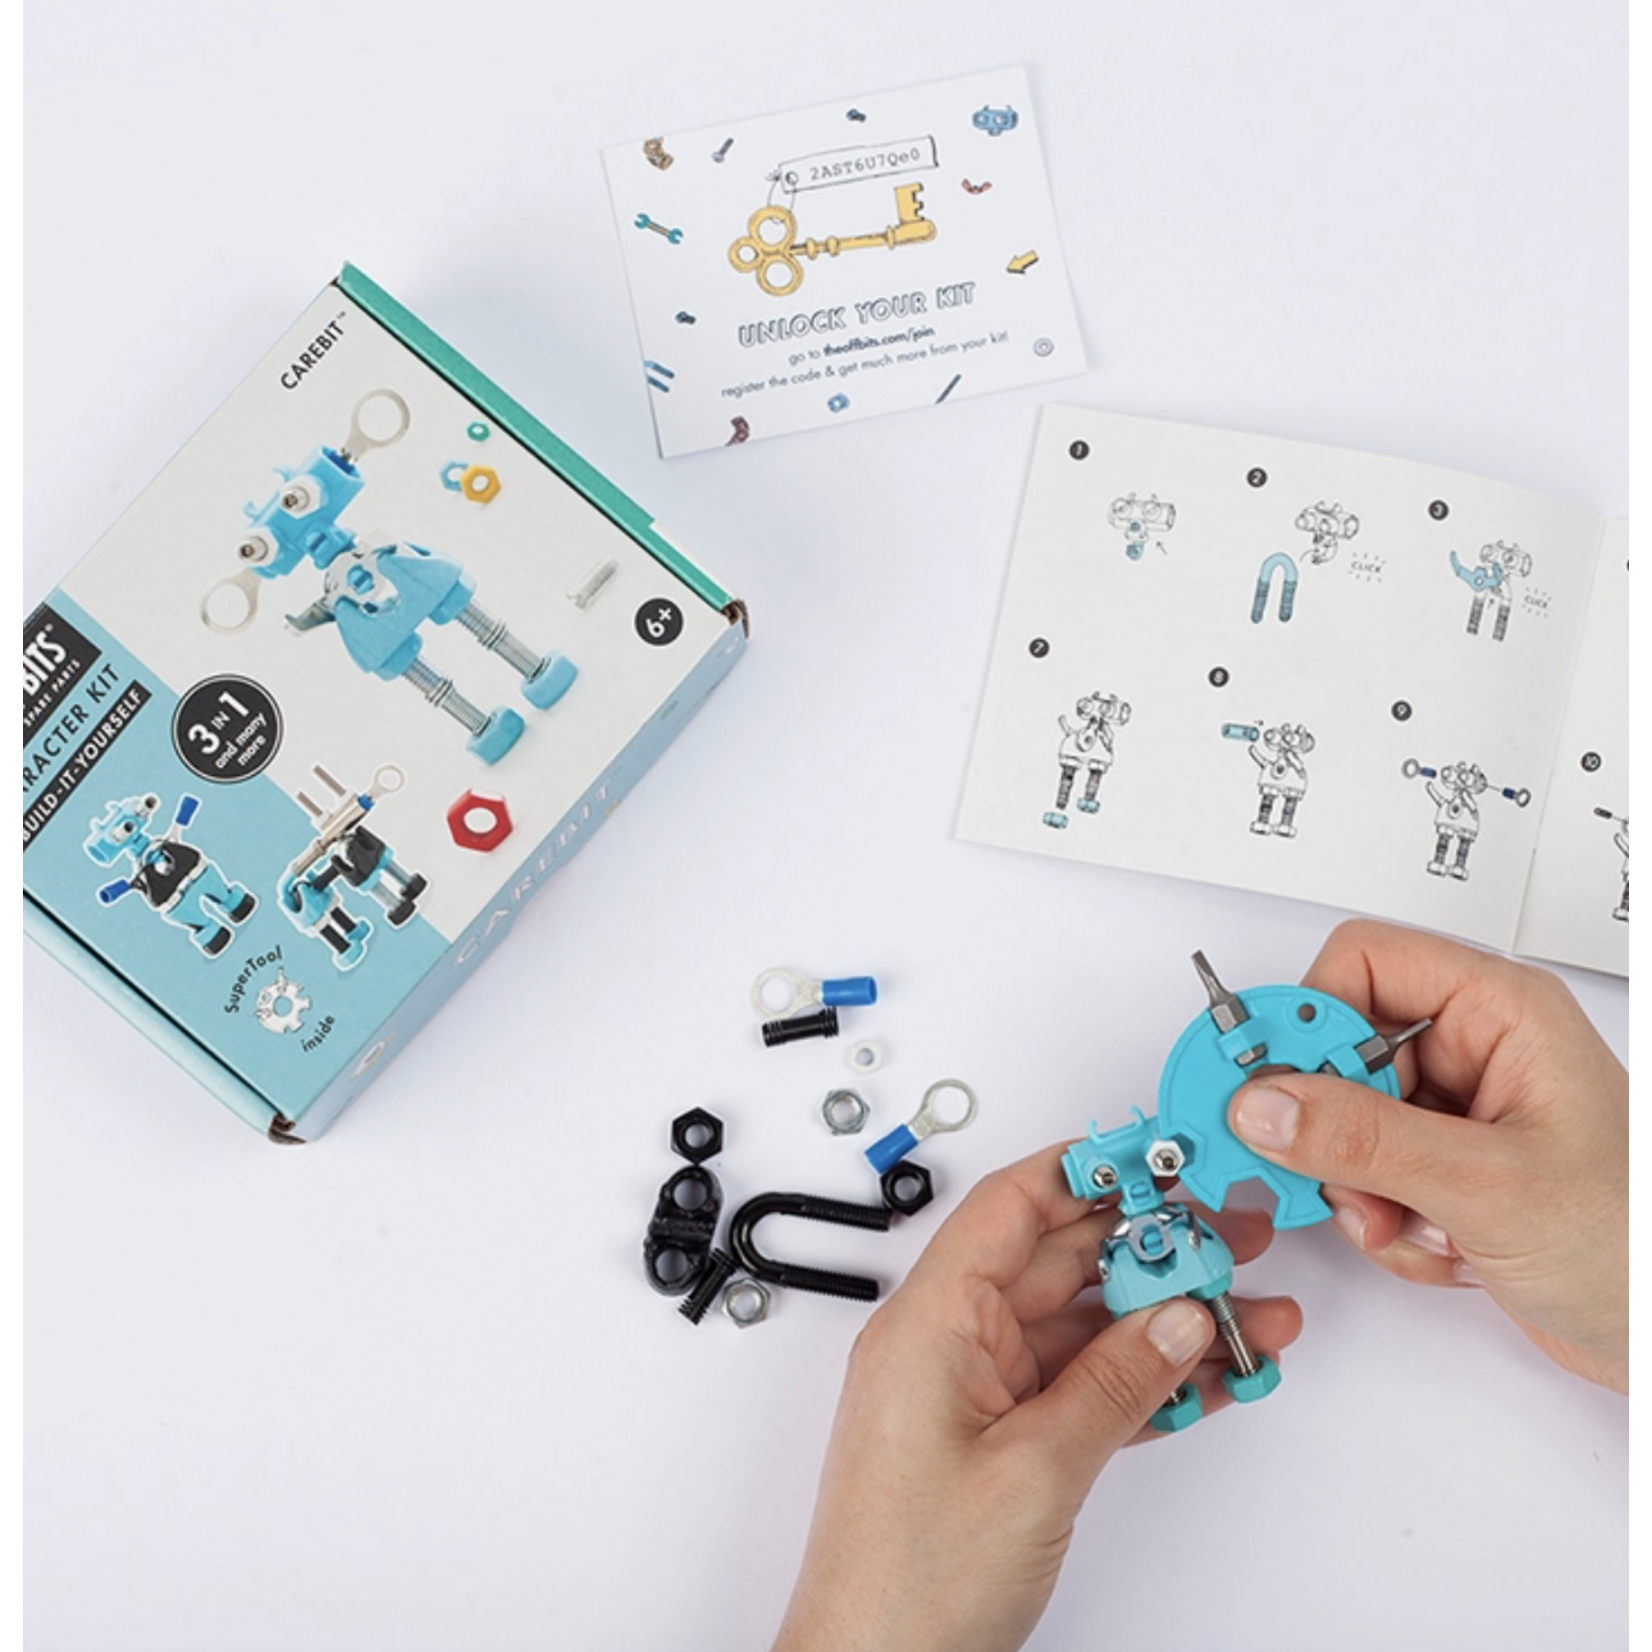 Offbits CareBit - Character Kit: Educational Robot Kit DIY